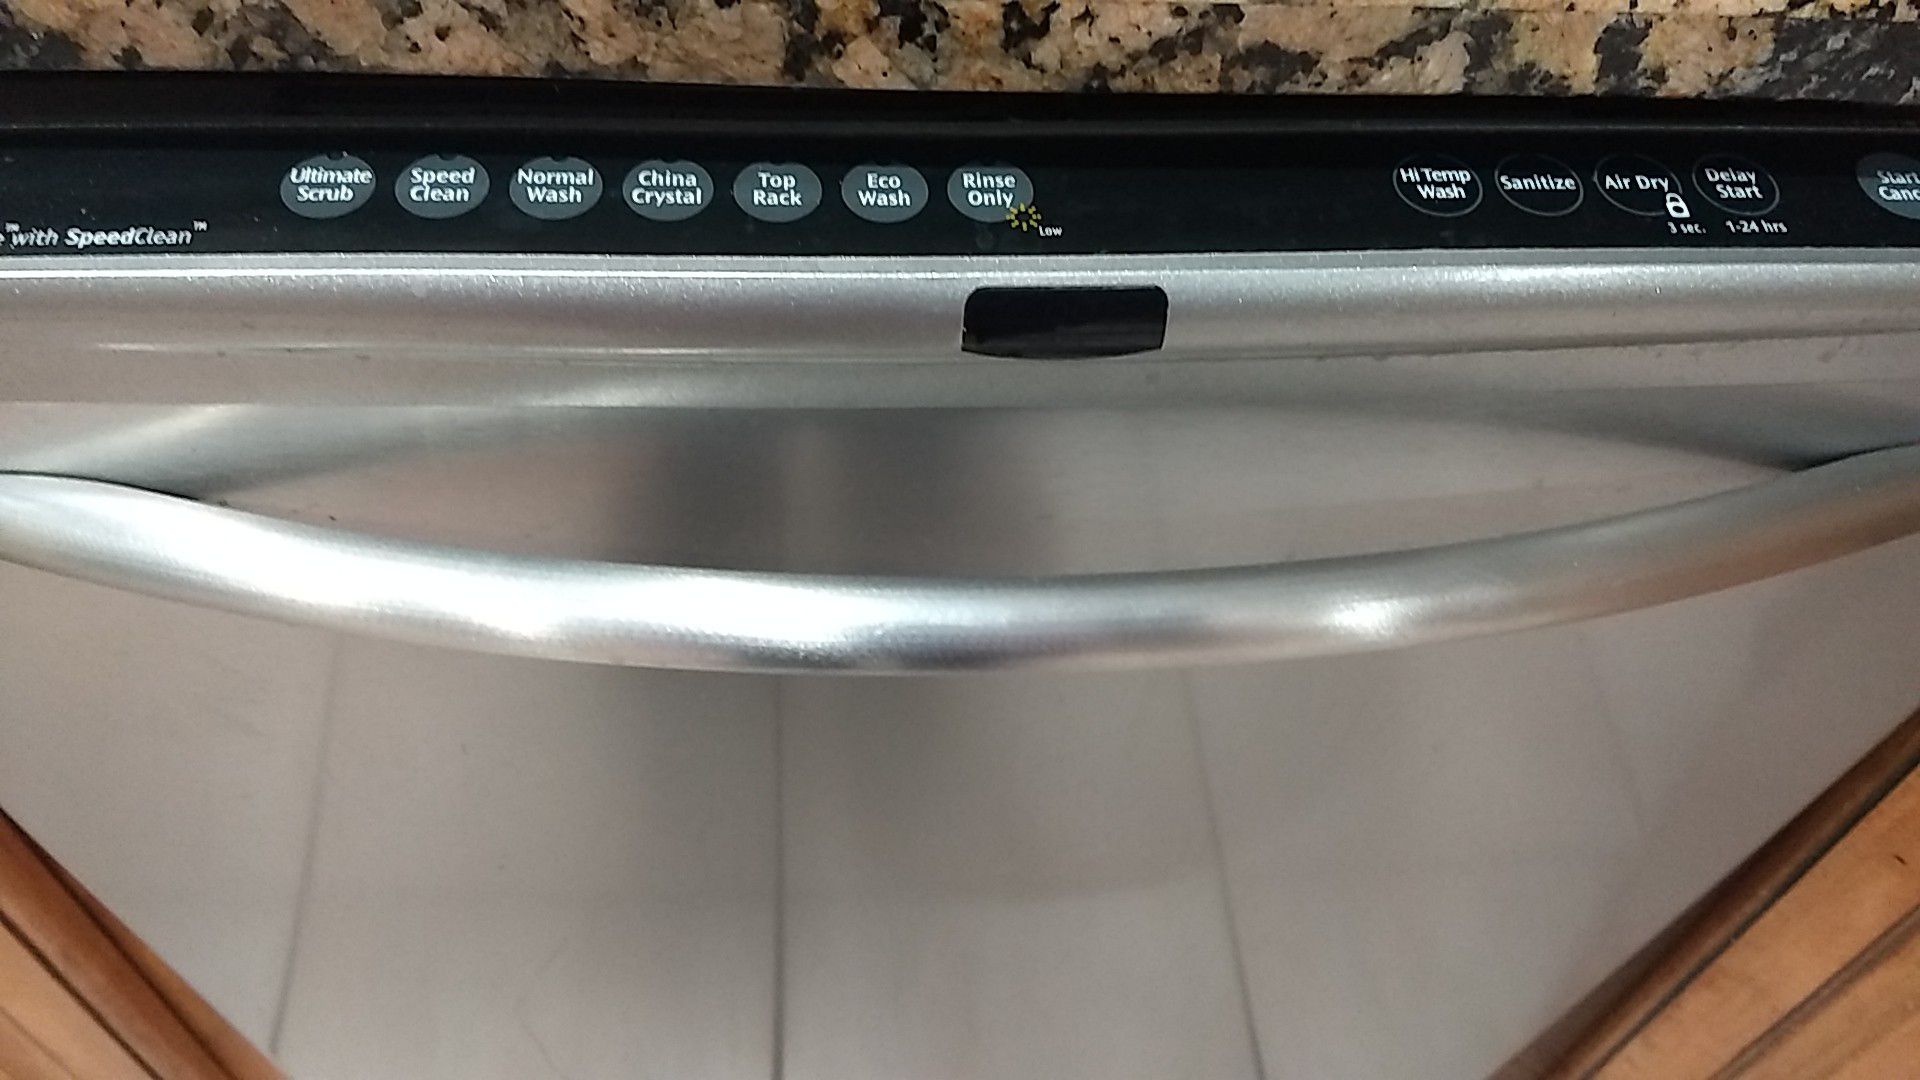 Frigidaire dishwasher